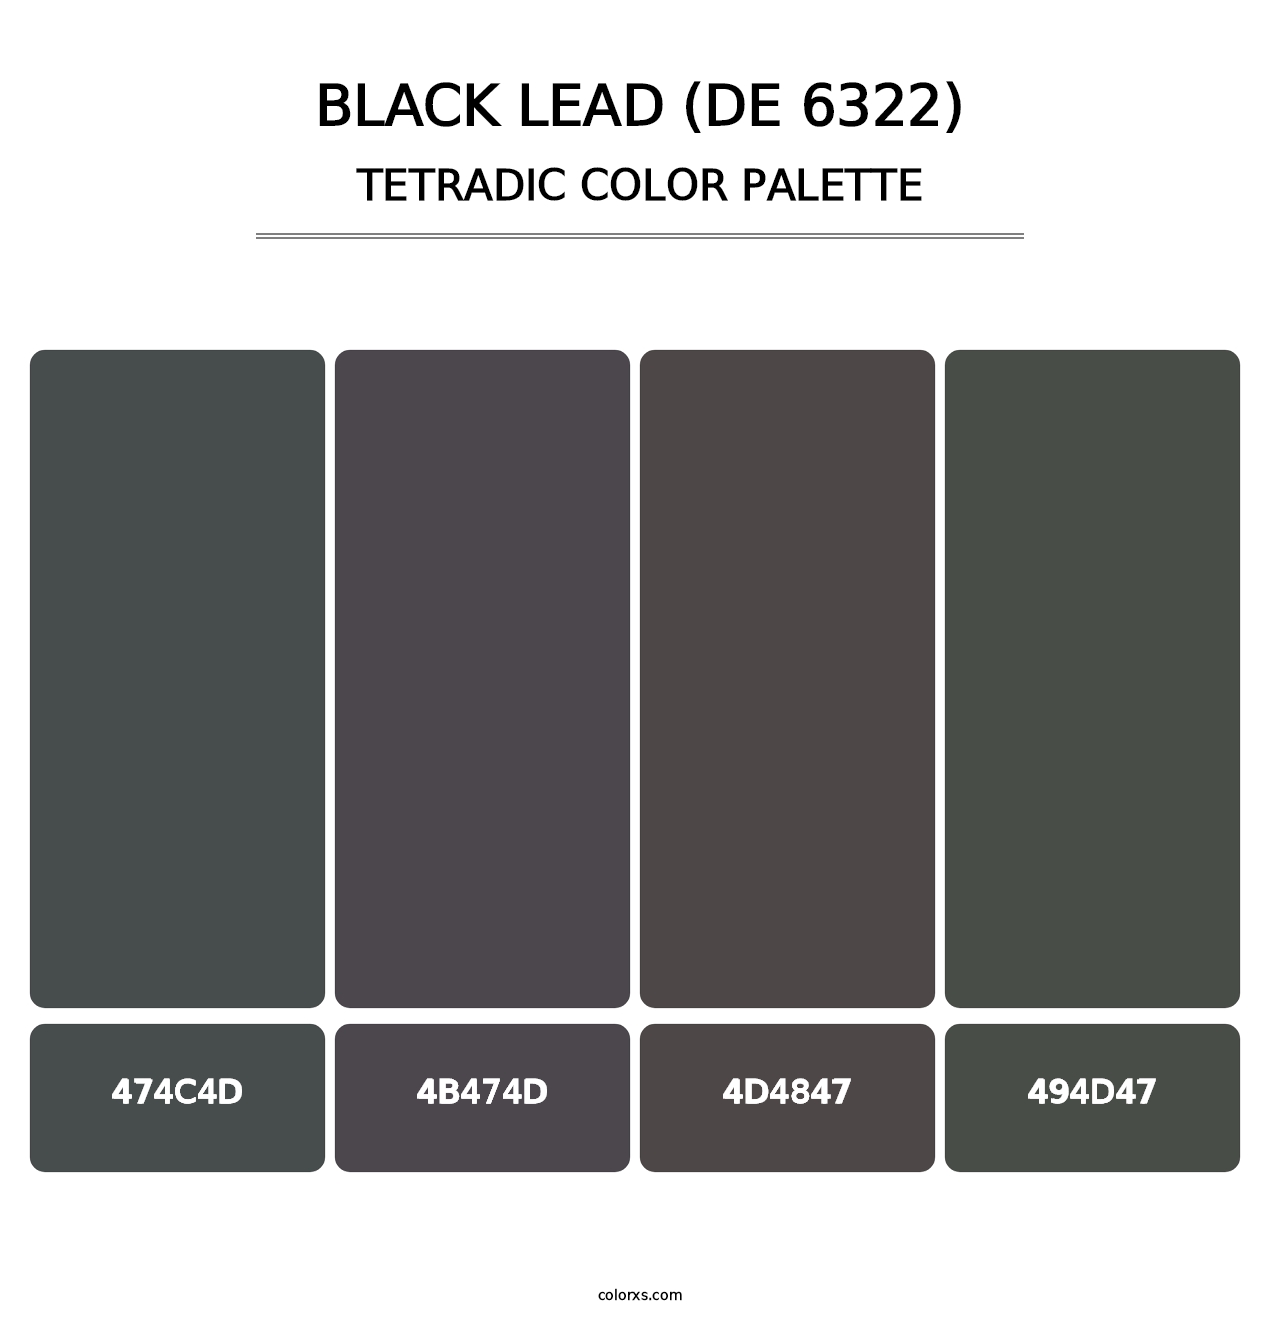 Black Lead (DE 6322) - Tetradic Color Palette